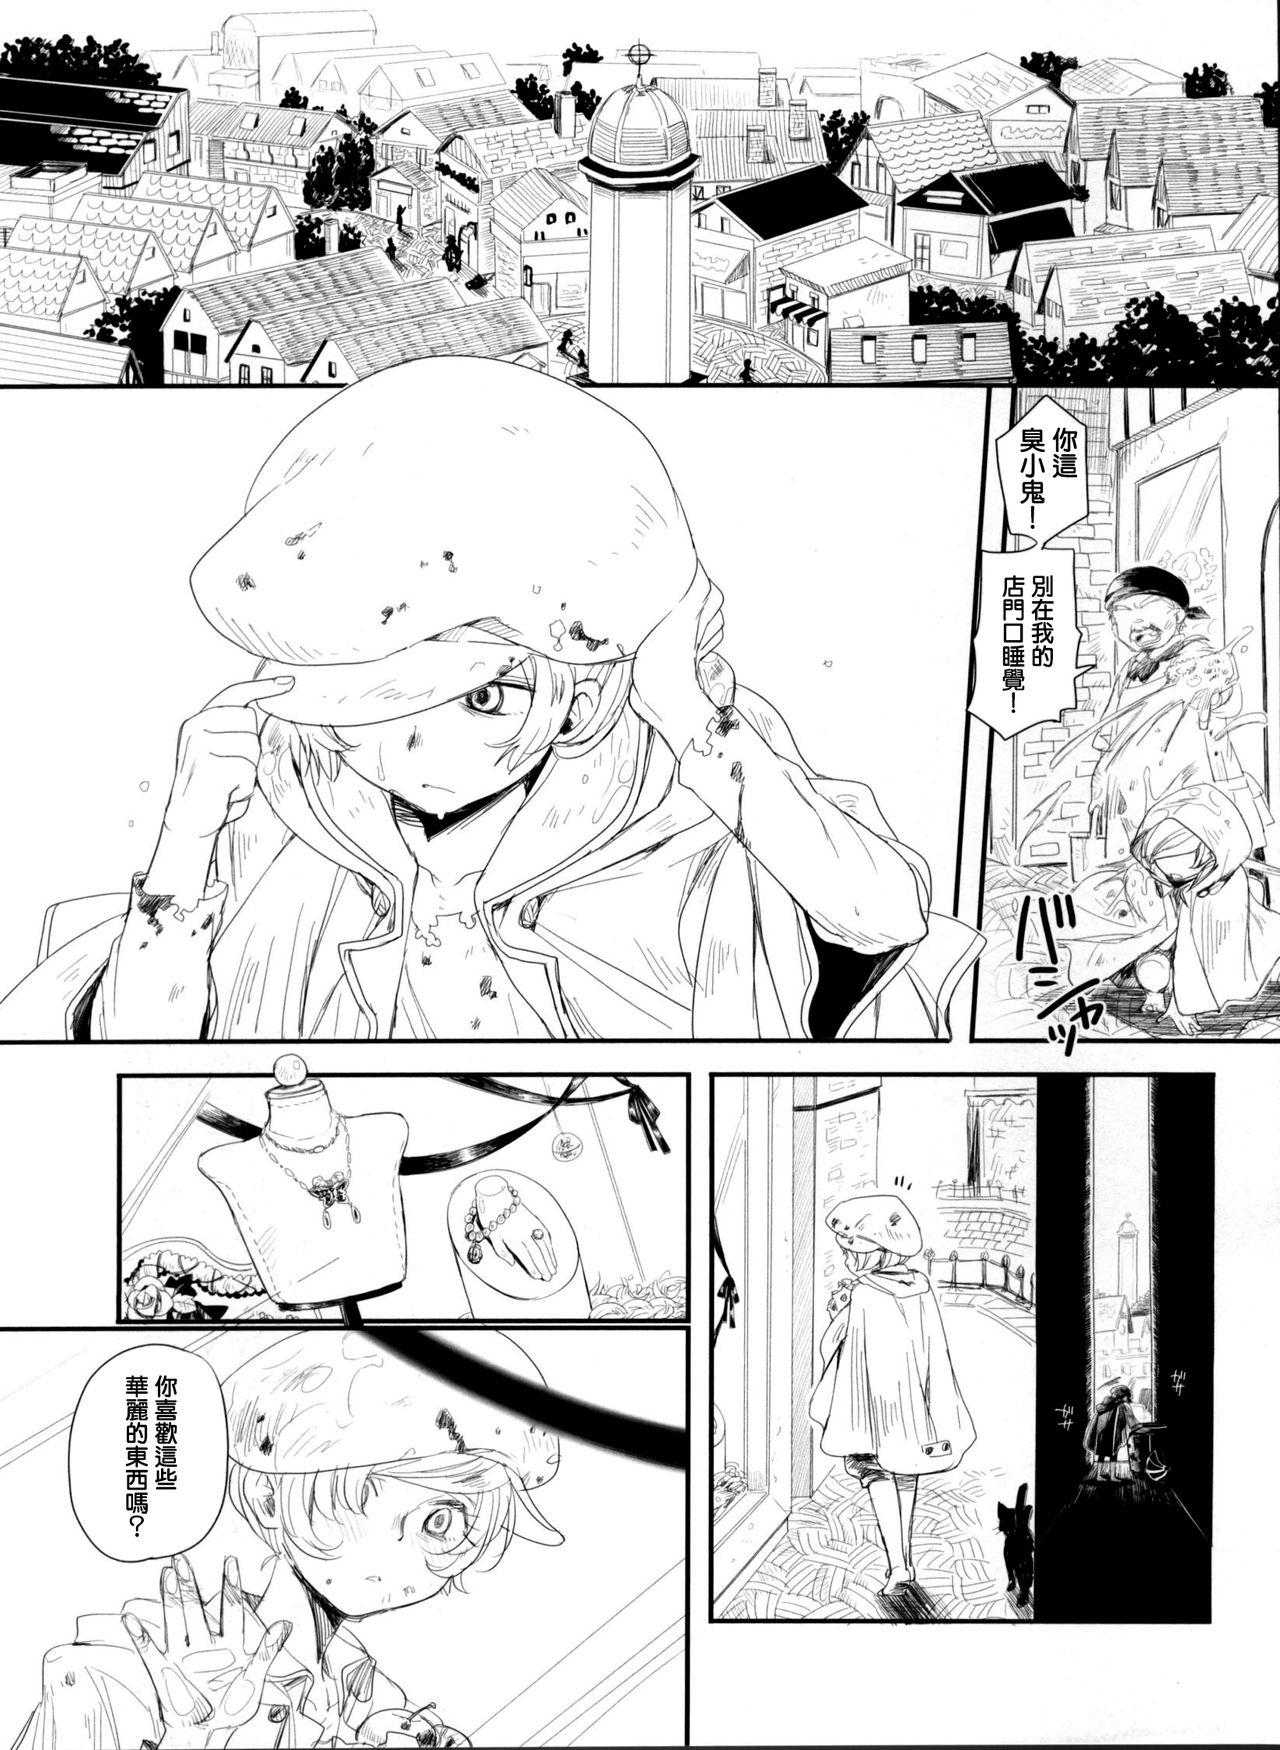 Gaysex Chiru Hana, Saku Hana. - Lupin iii Asshole - Page 4